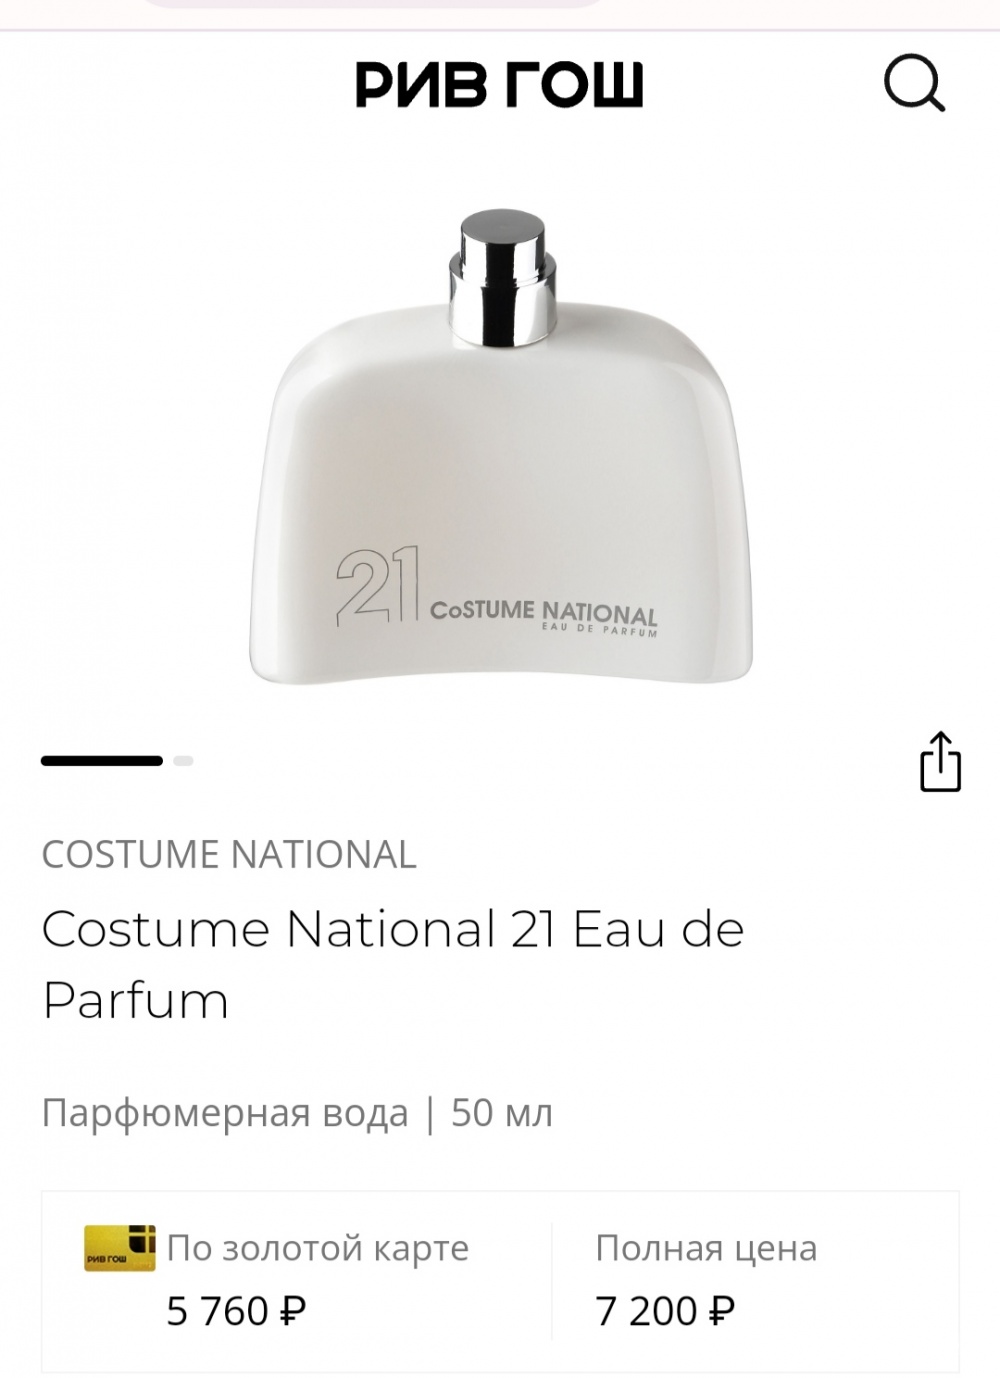 Парфюмированная вода Costume National 21,50 ml